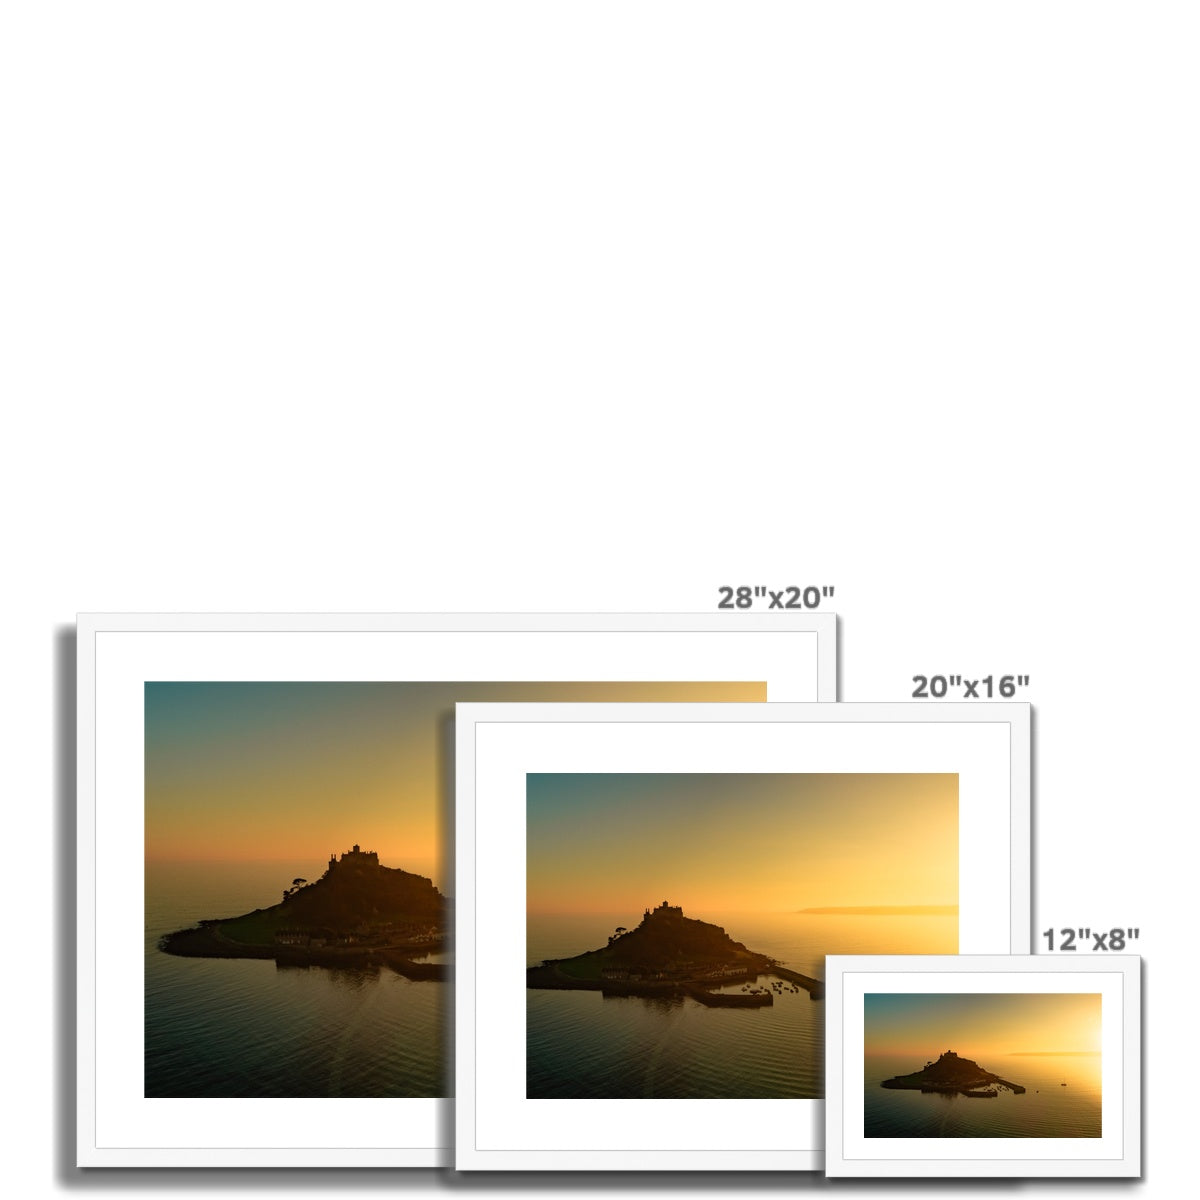 st michaels mount golden sunset frame sizes